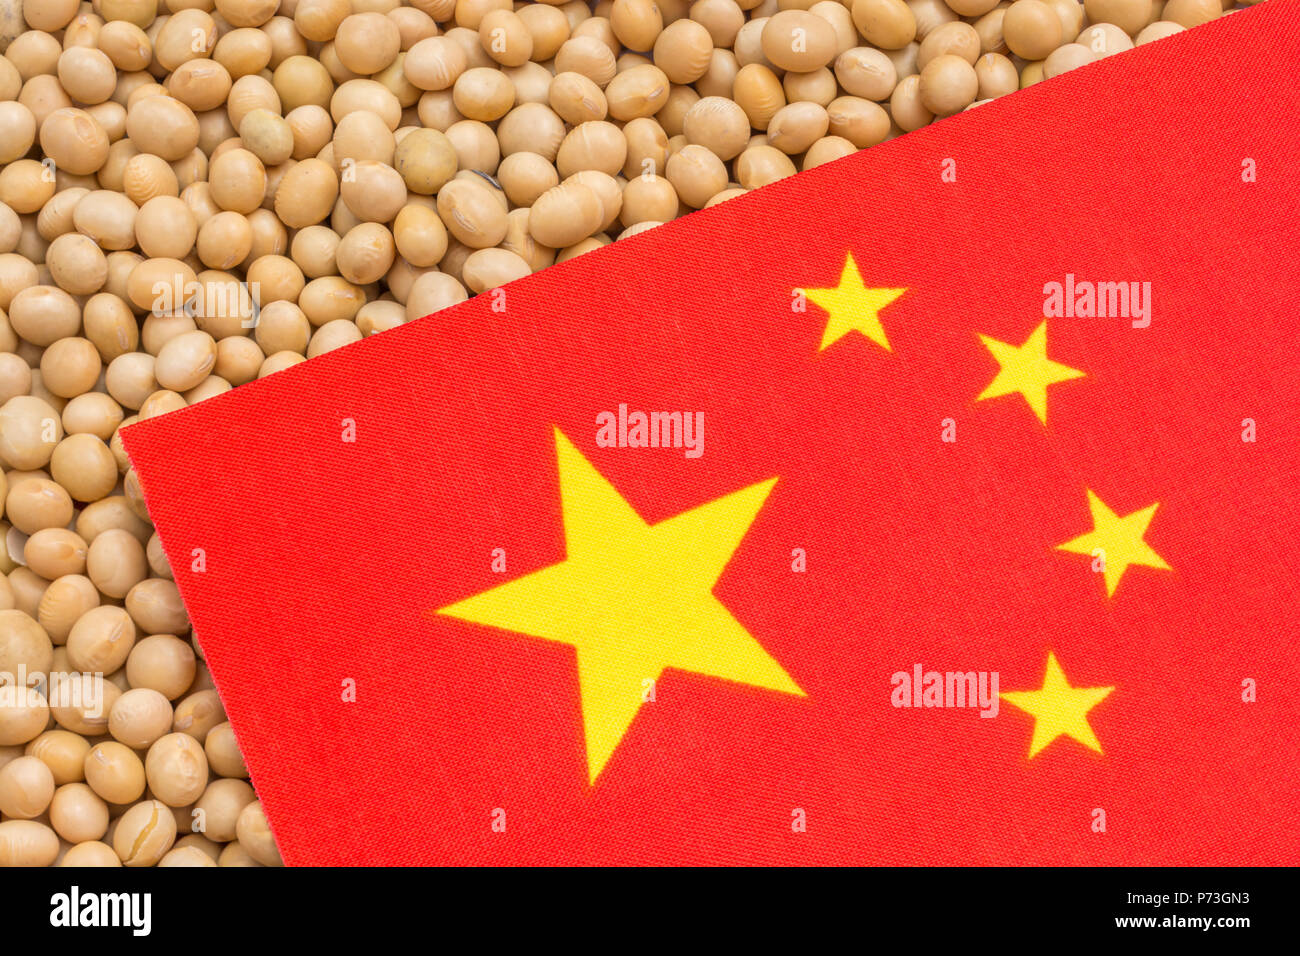 Chinesische Fahne mit getrockneten Sojabohnen - Metapher für US-China trade Krieg und Chinesischen Zölle auf Einfuhren von Sojabohnen. Stockfoto